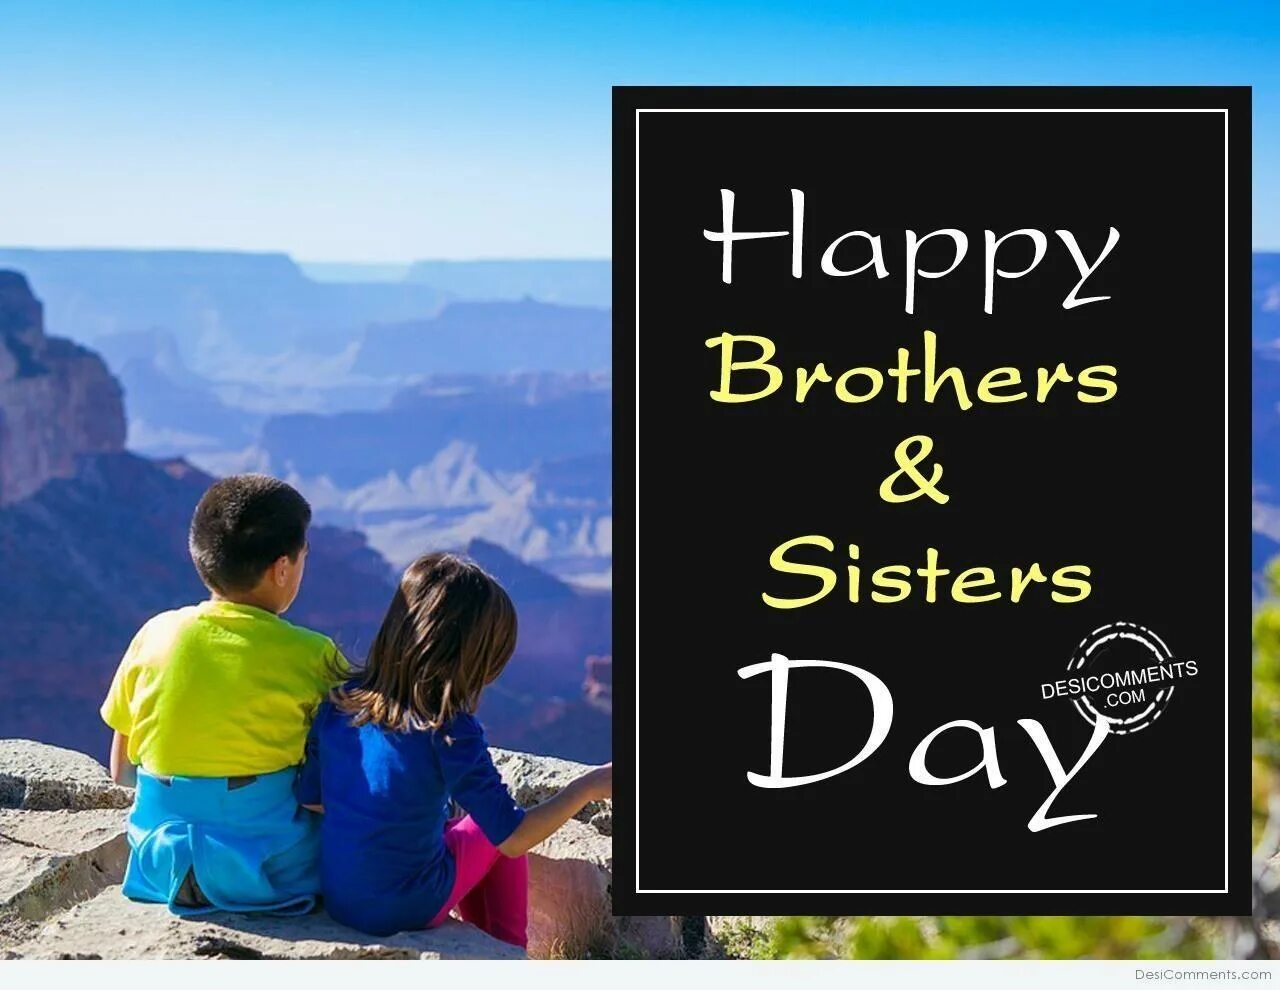 День брата в мае. День братьев и сестер. Европейский день братьев и сестер. С праздником братьев и сестер. День братьев.